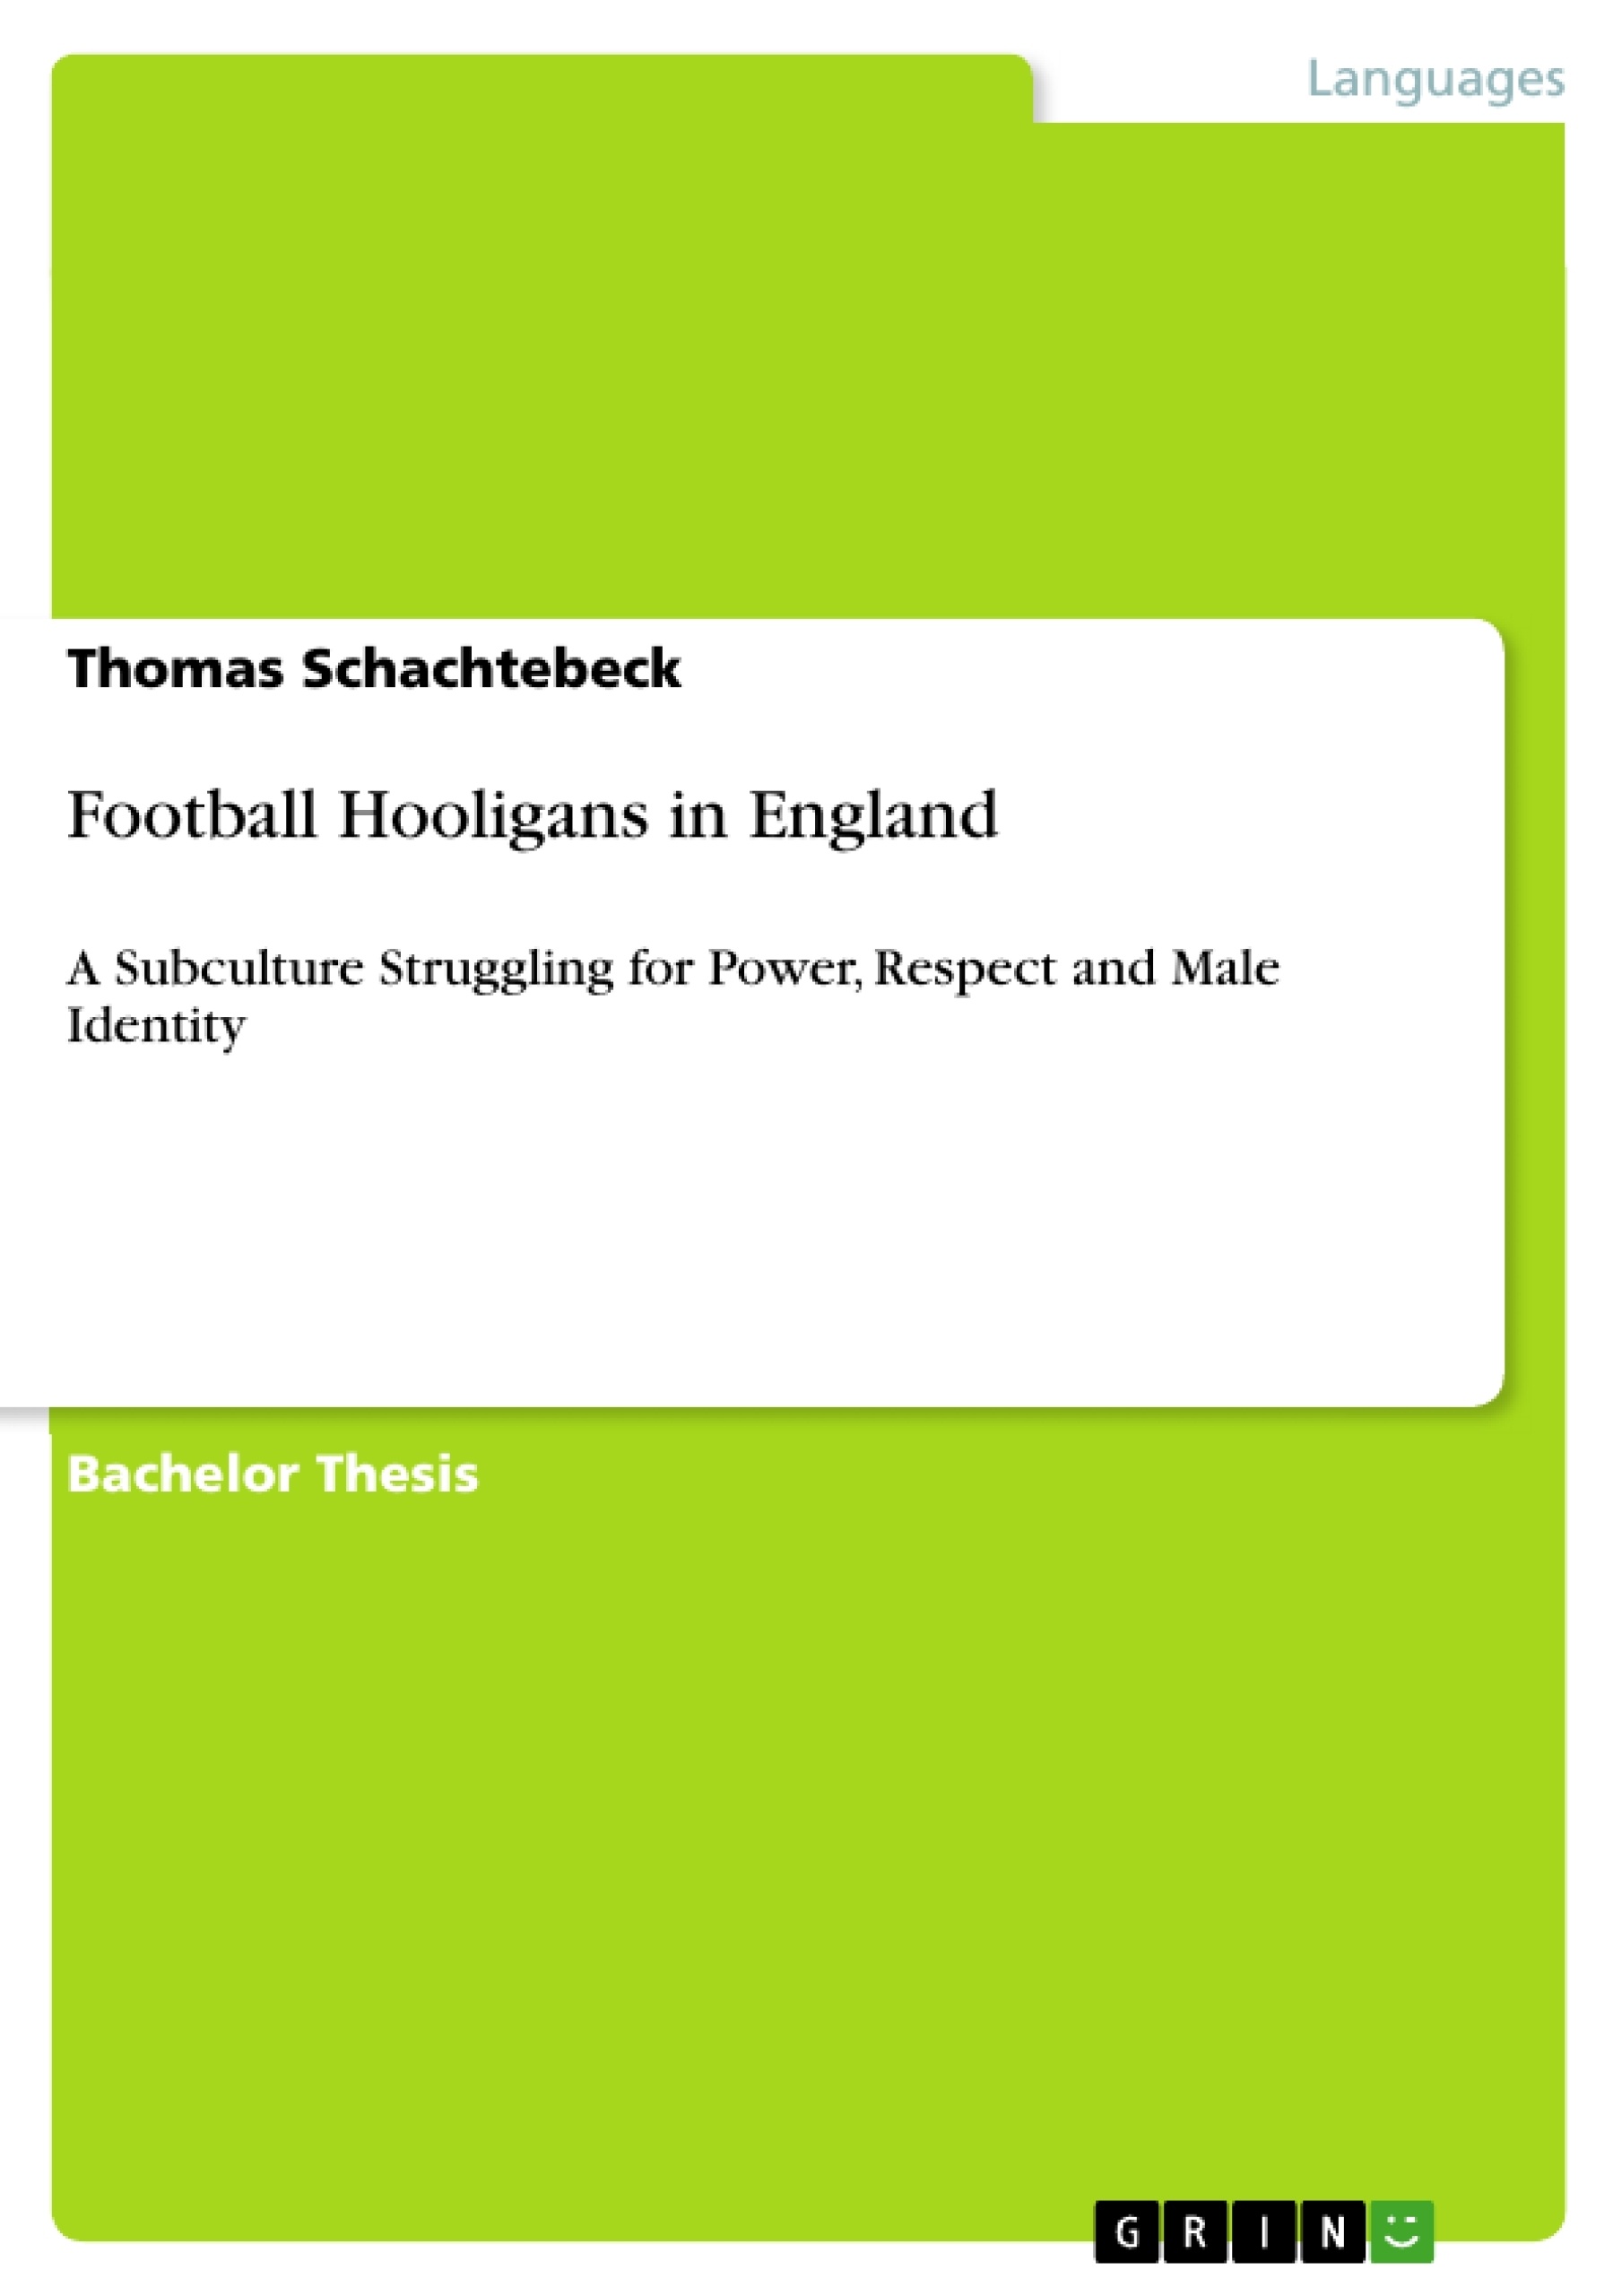 Football hooliganism essays